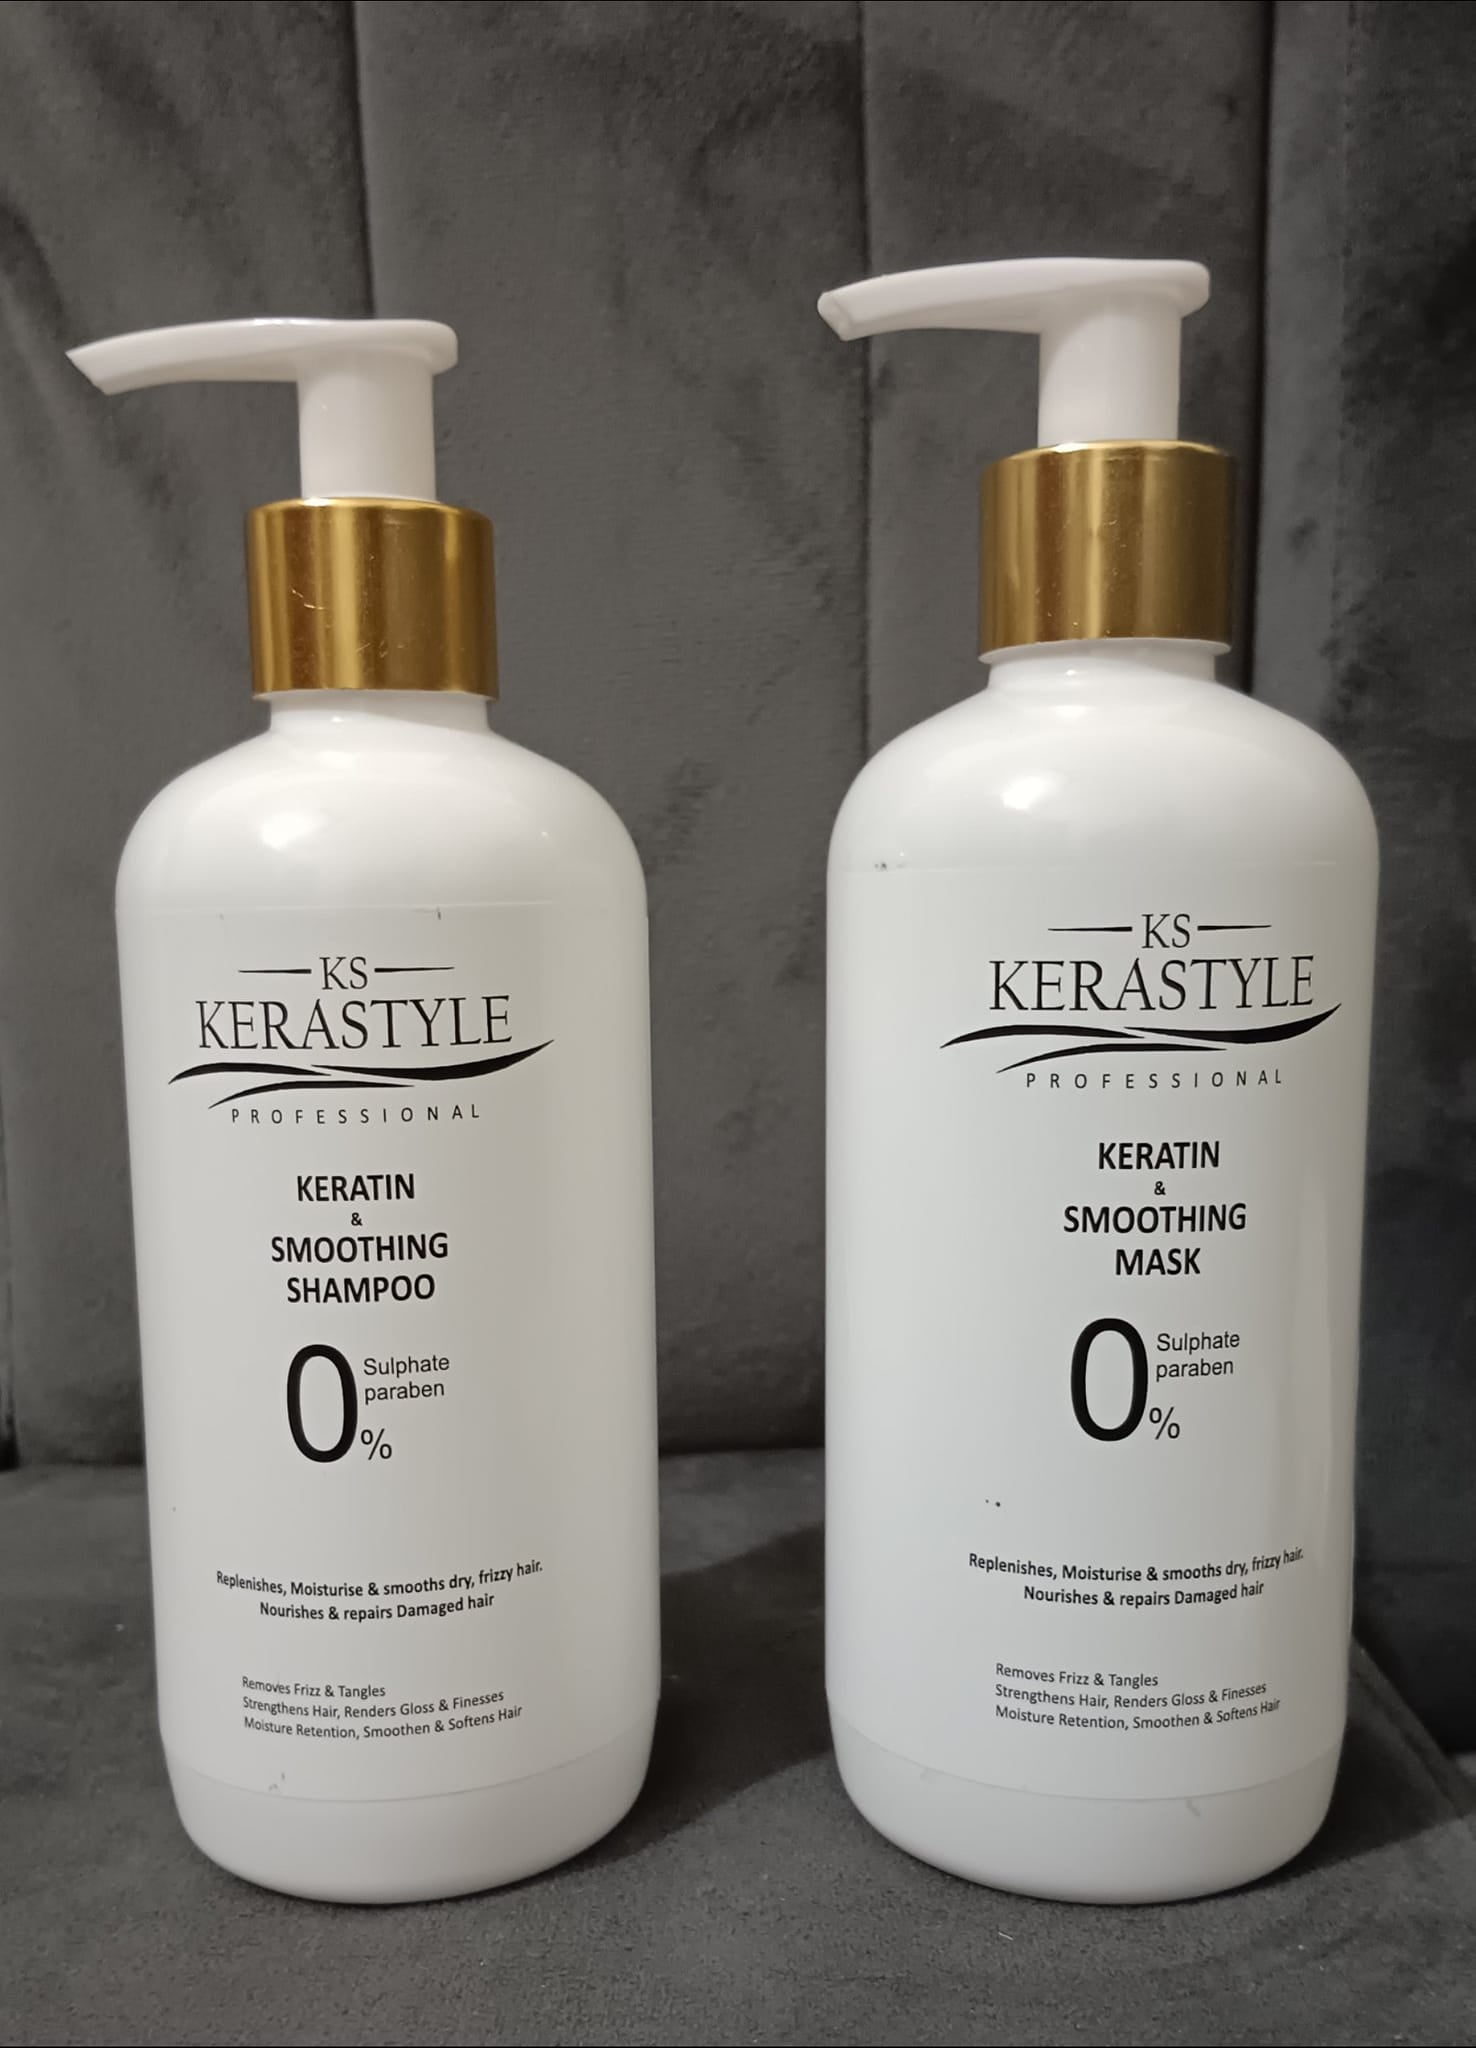 Kerastyle Keratin & Smoothing Shampoo